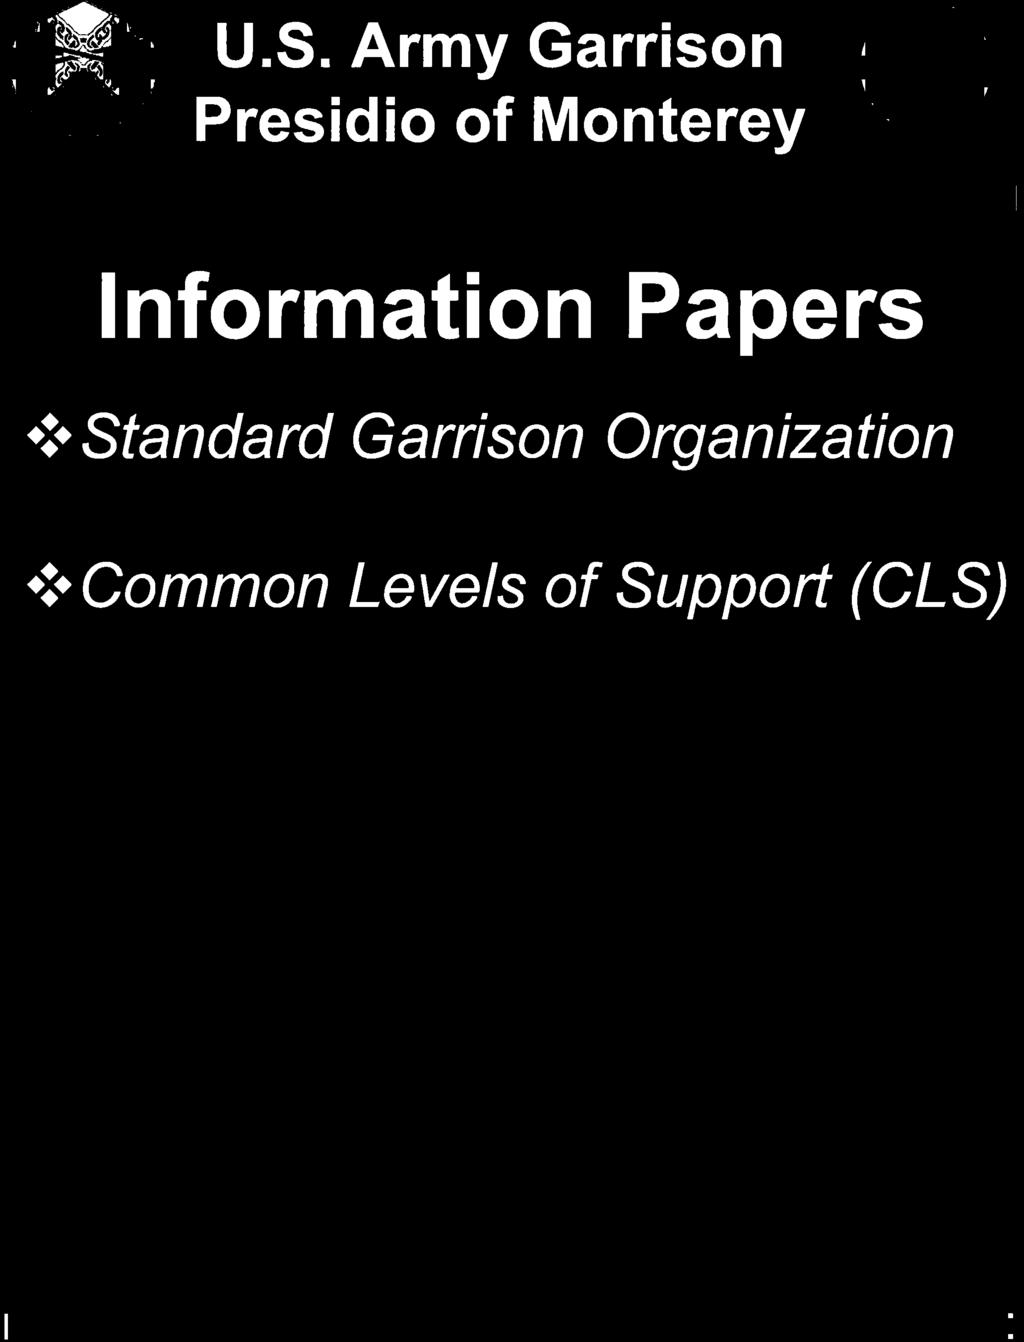 Standard Garrison Organization.